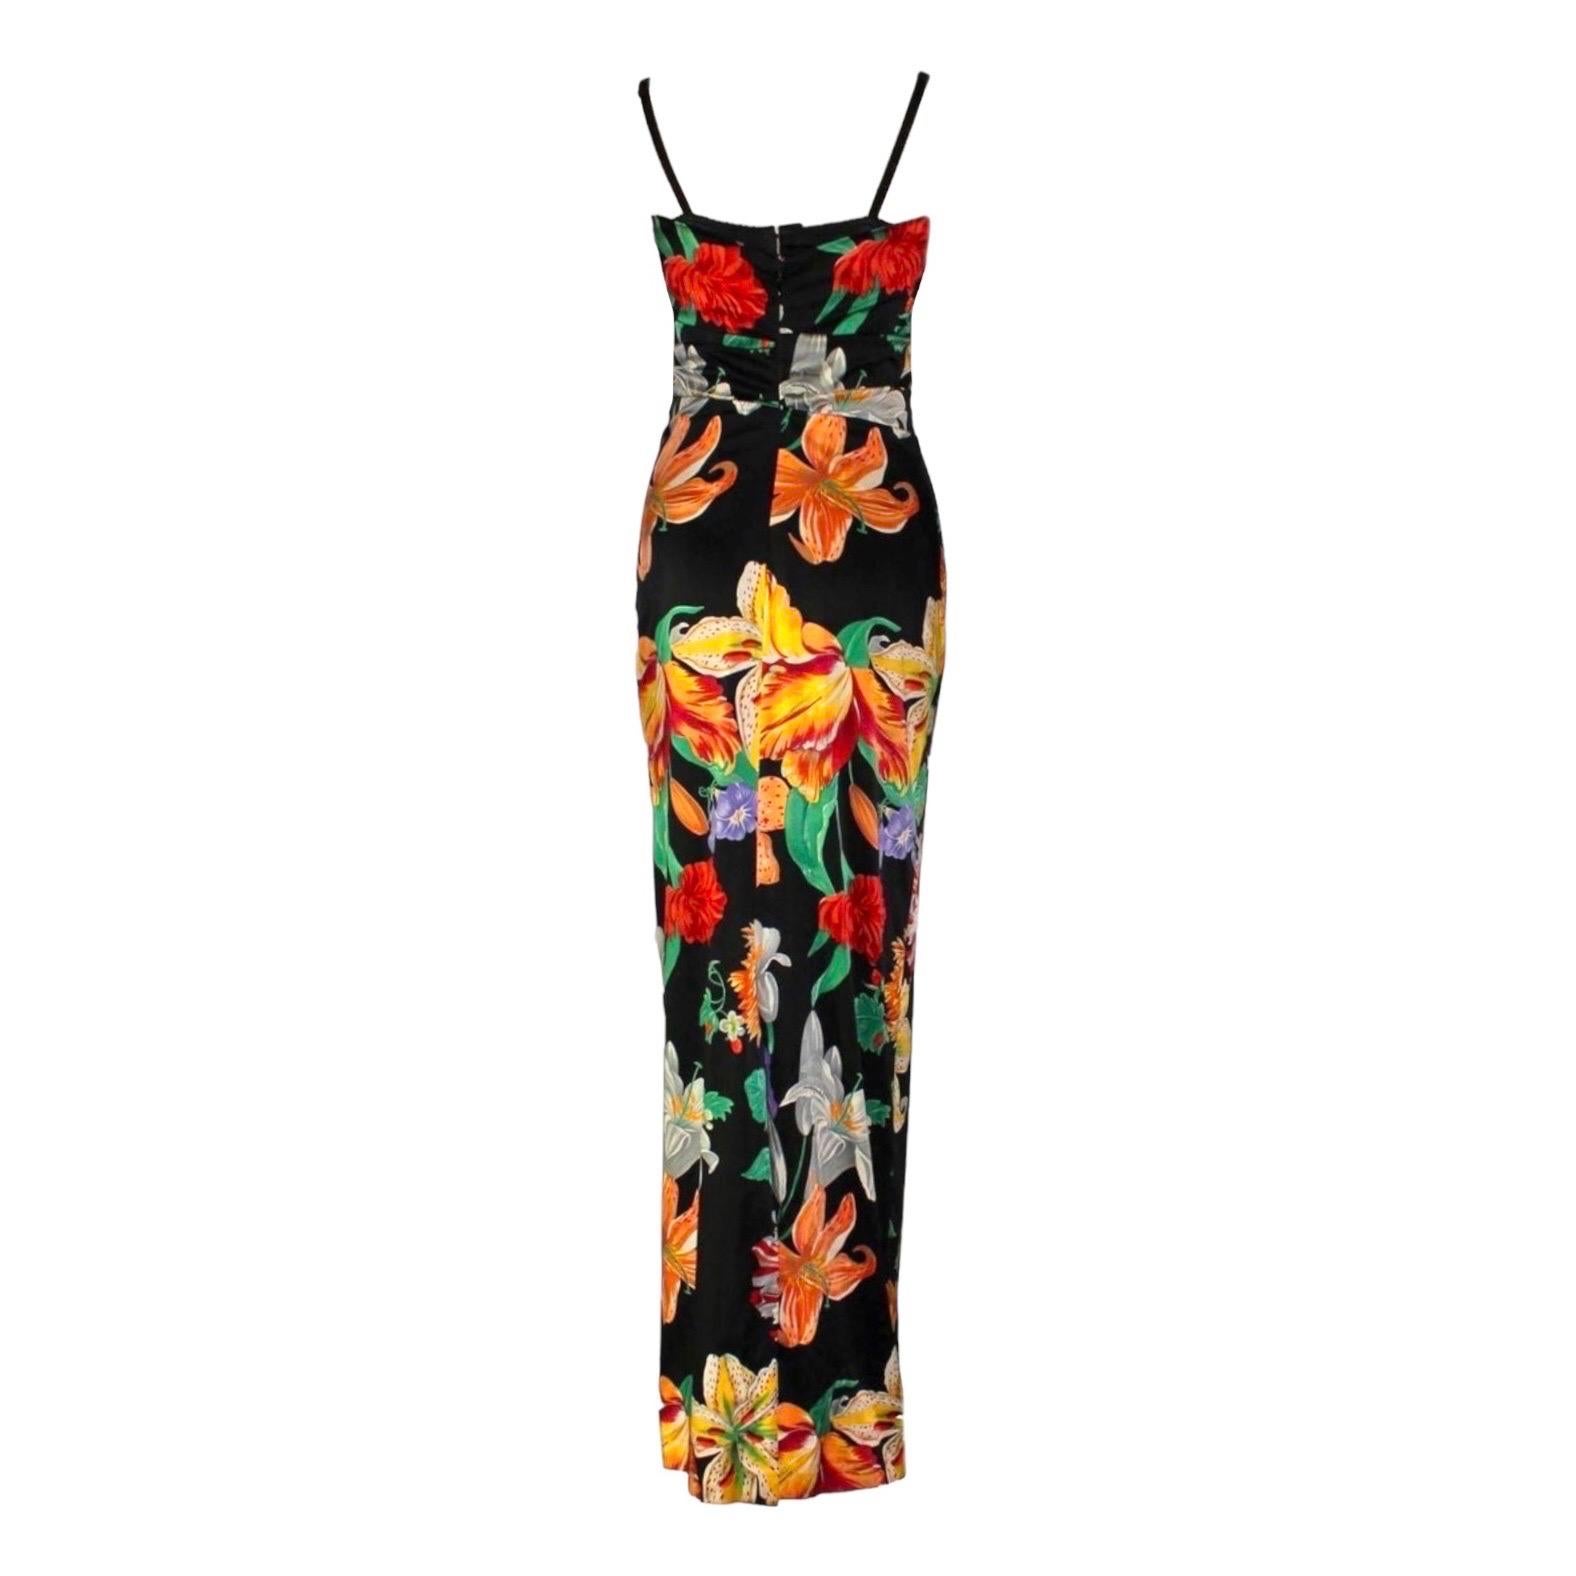 UNIQUE Dolce & Gabbana 1990s SATC SJP Carrie's Corset Evening Dress Gown For Sale 1